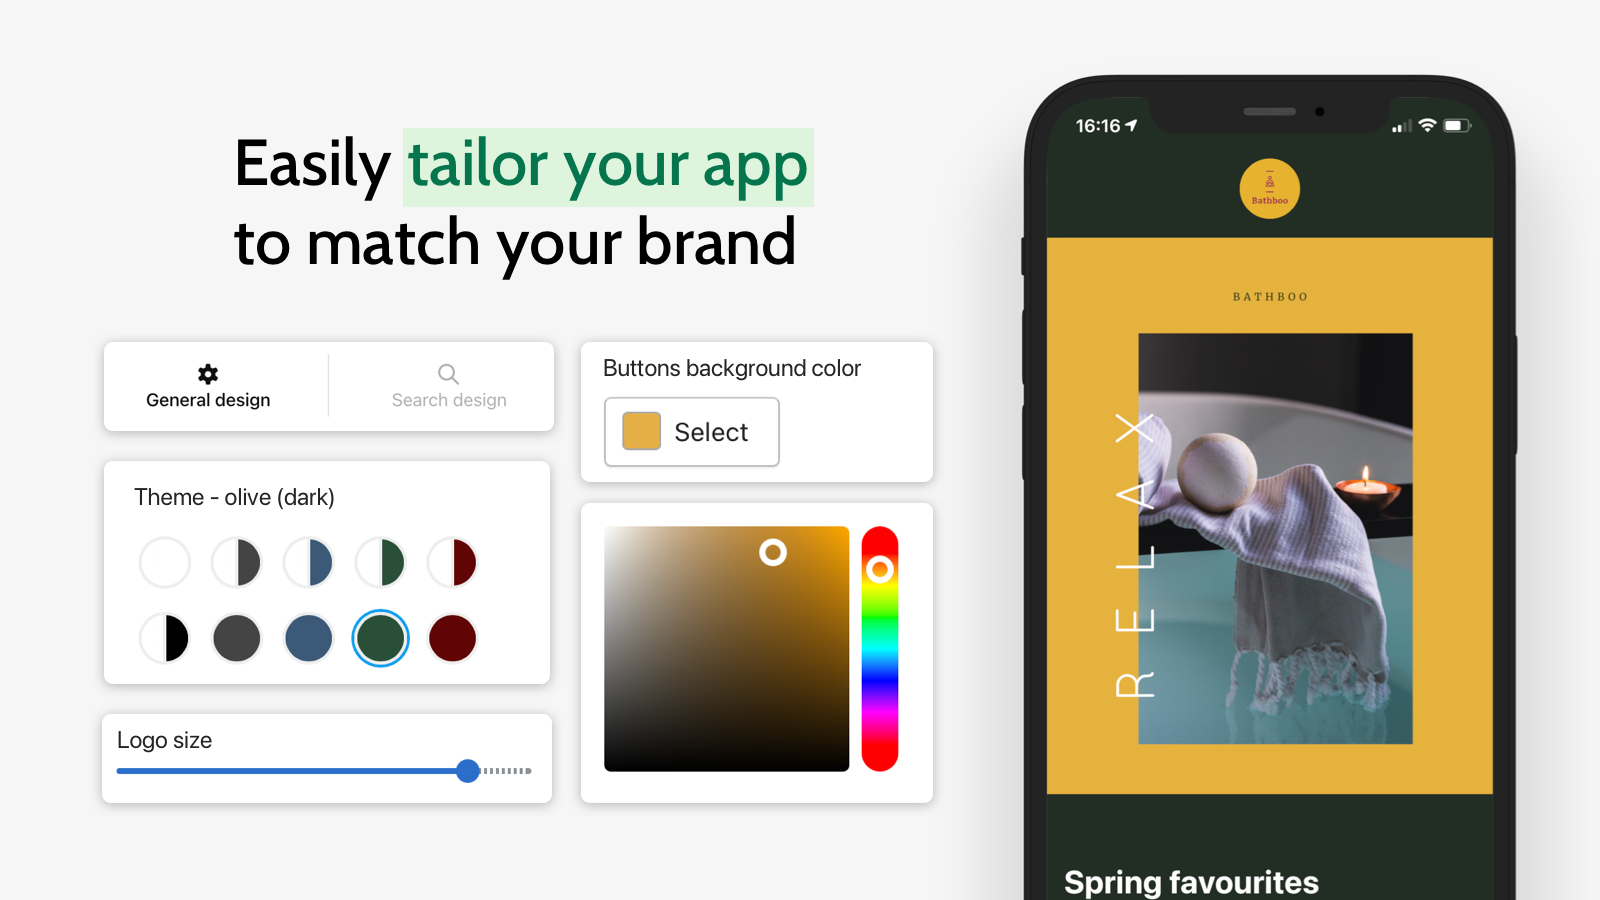 Anpassa enkelt din app för att matcha ditt varumärke